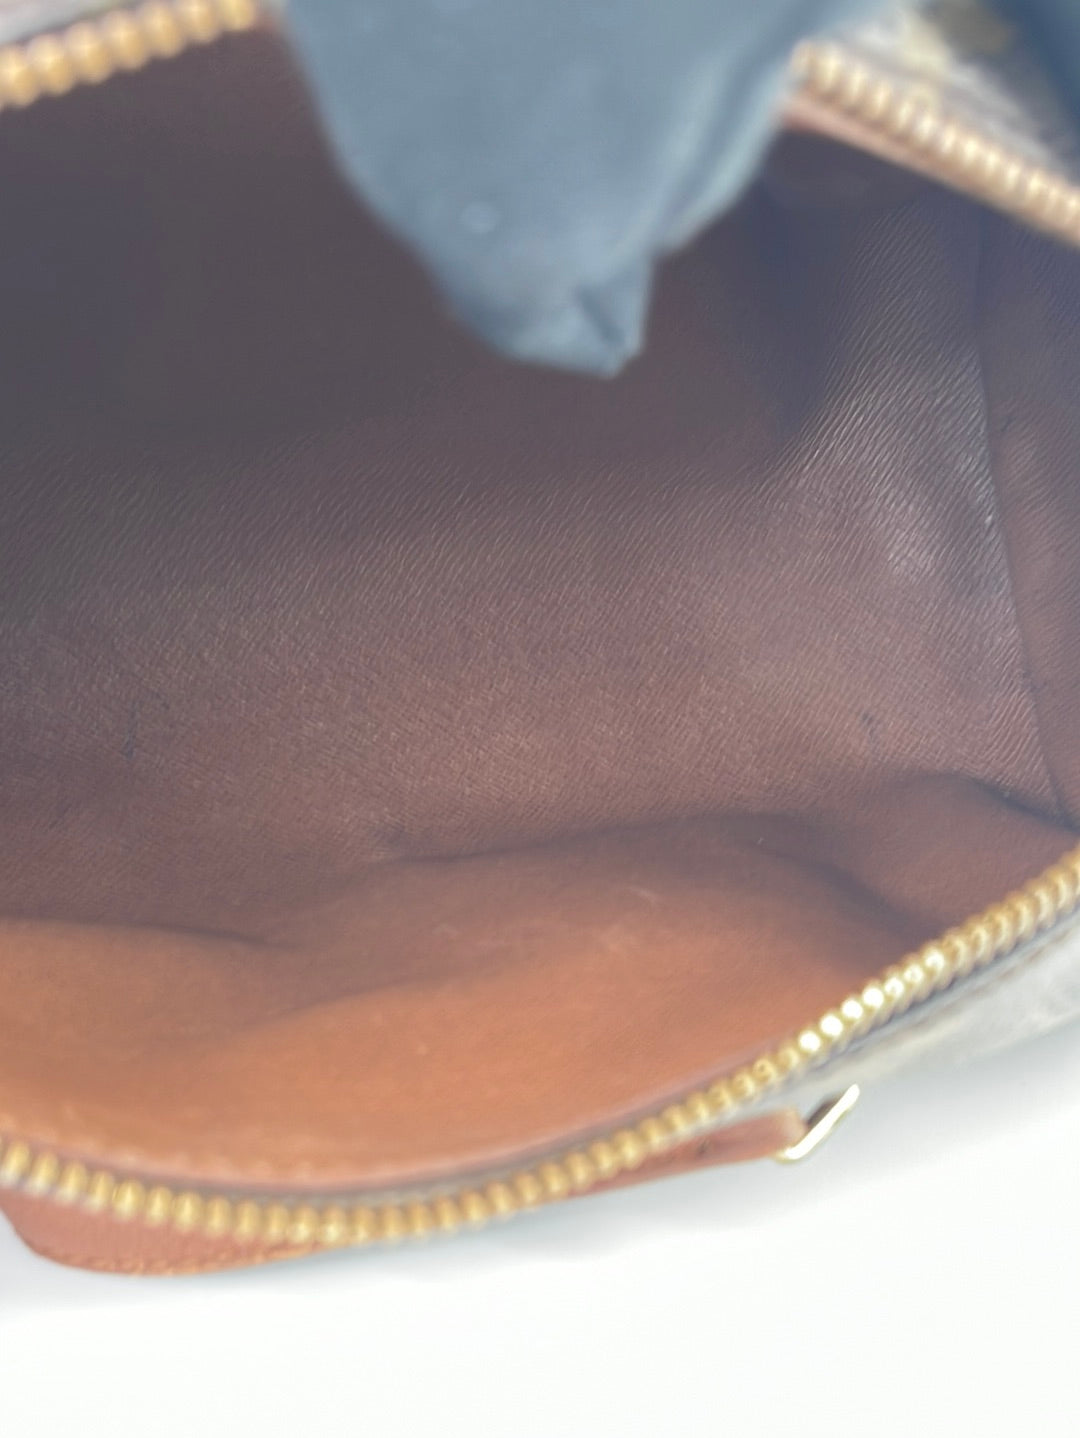 Louis Vuitton Papillon Trunk Bag Epi Leather Pink 230485245